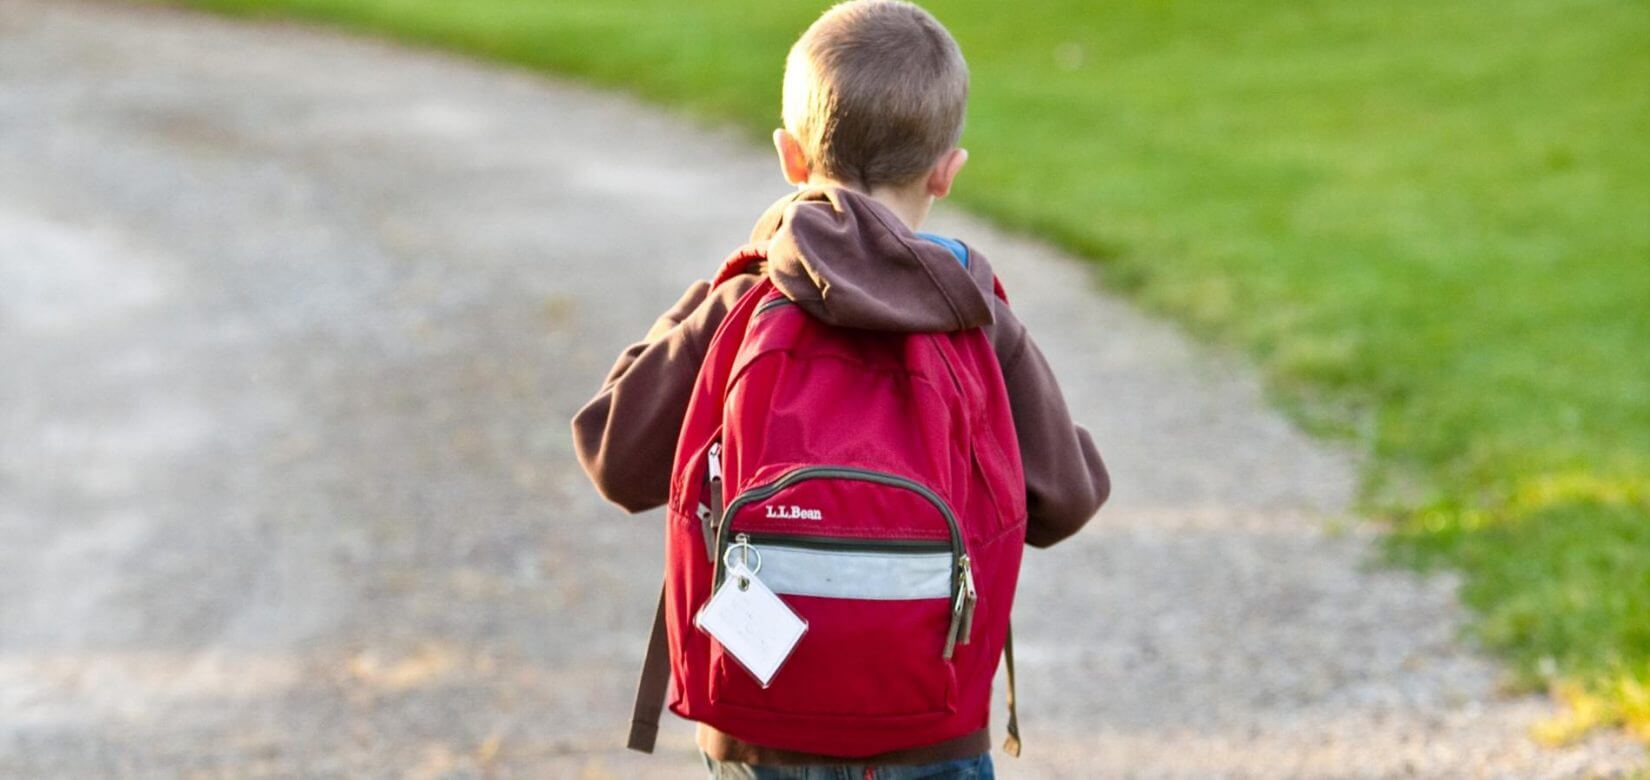 Σχολική τσάντα: Ο γιατρός συμβουλεύει πώς να διαλέξετε την κατάλληλη για το παιδί σας